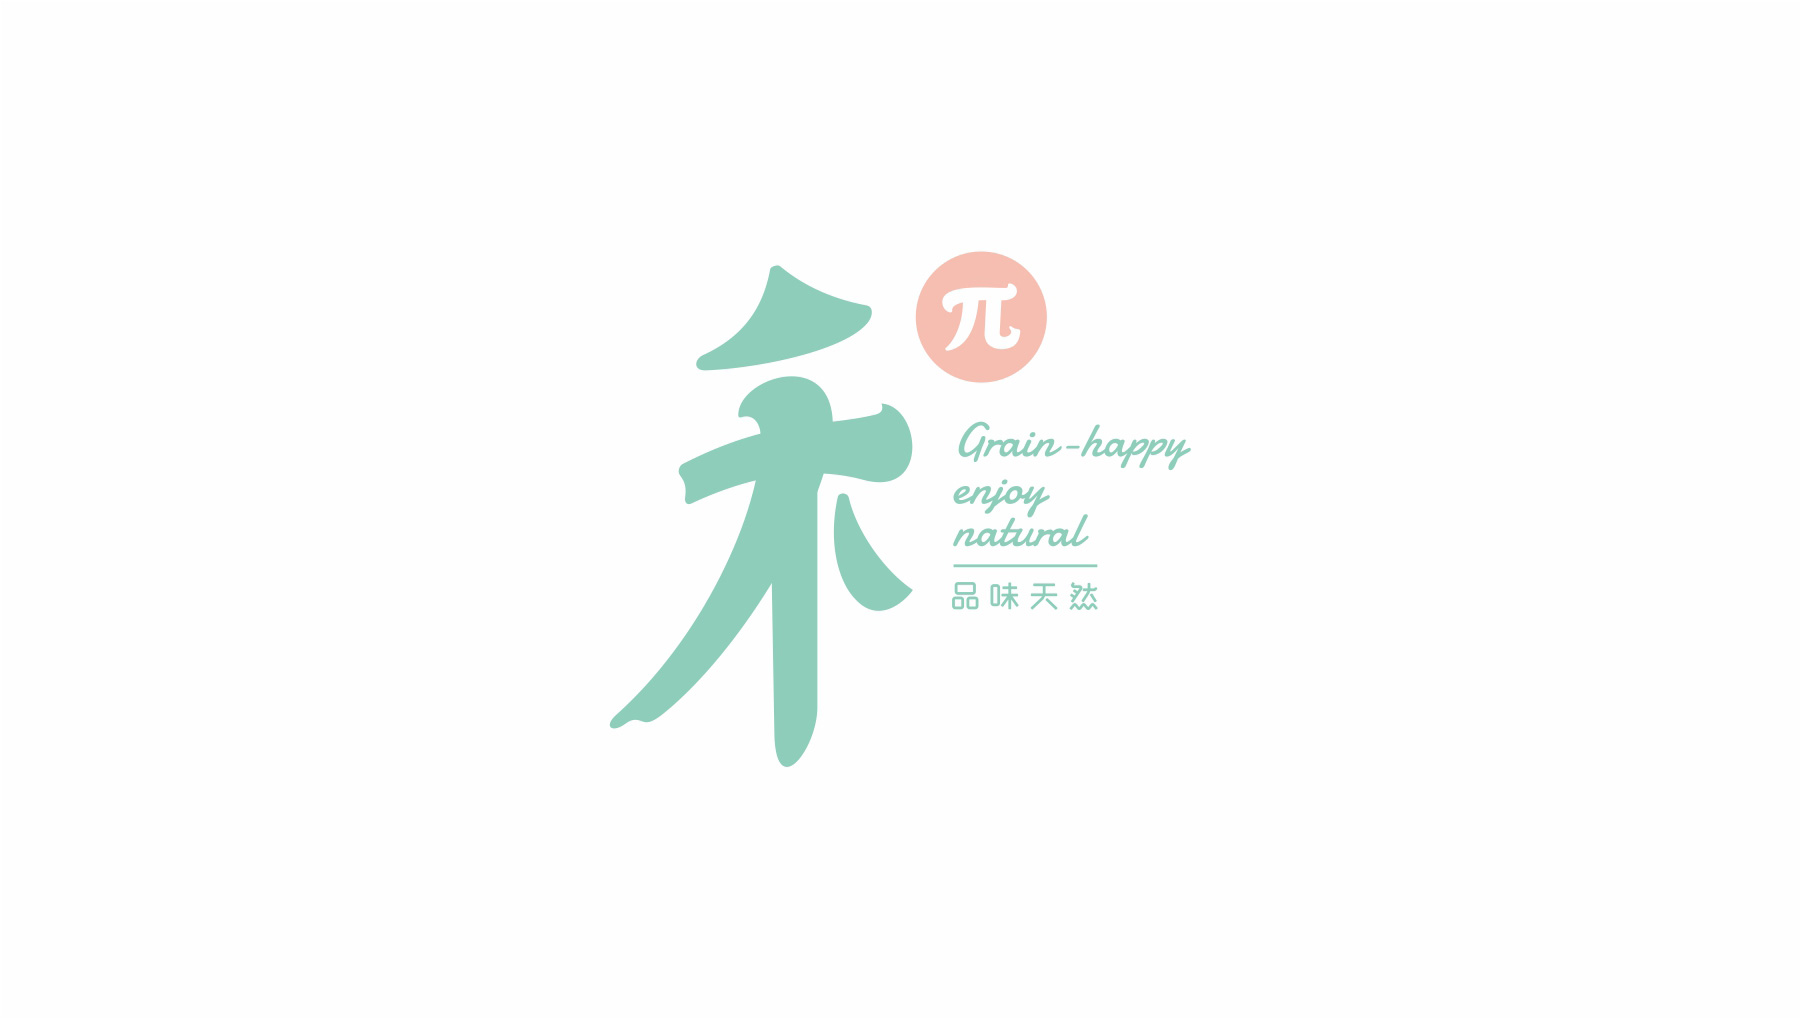 禾π餐饮品牌logo设计